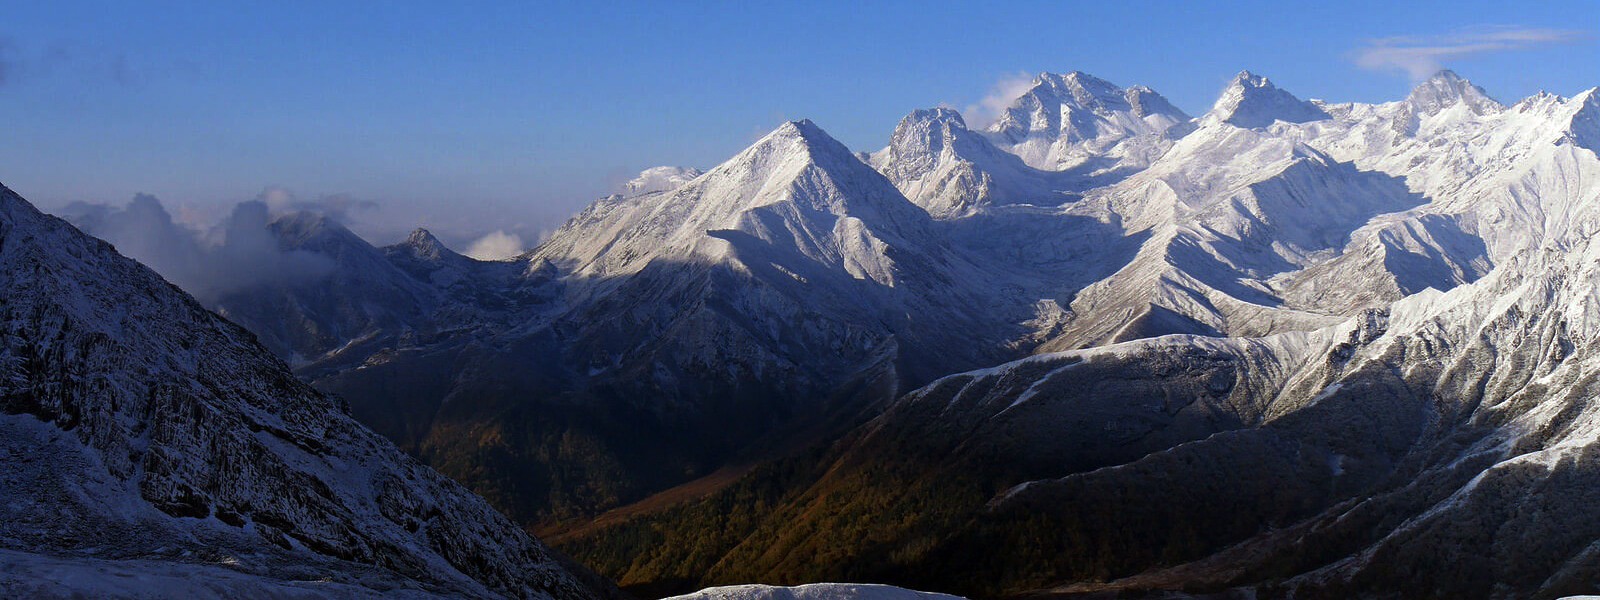 Mount Saipal Base Camp Trekking western Nepal